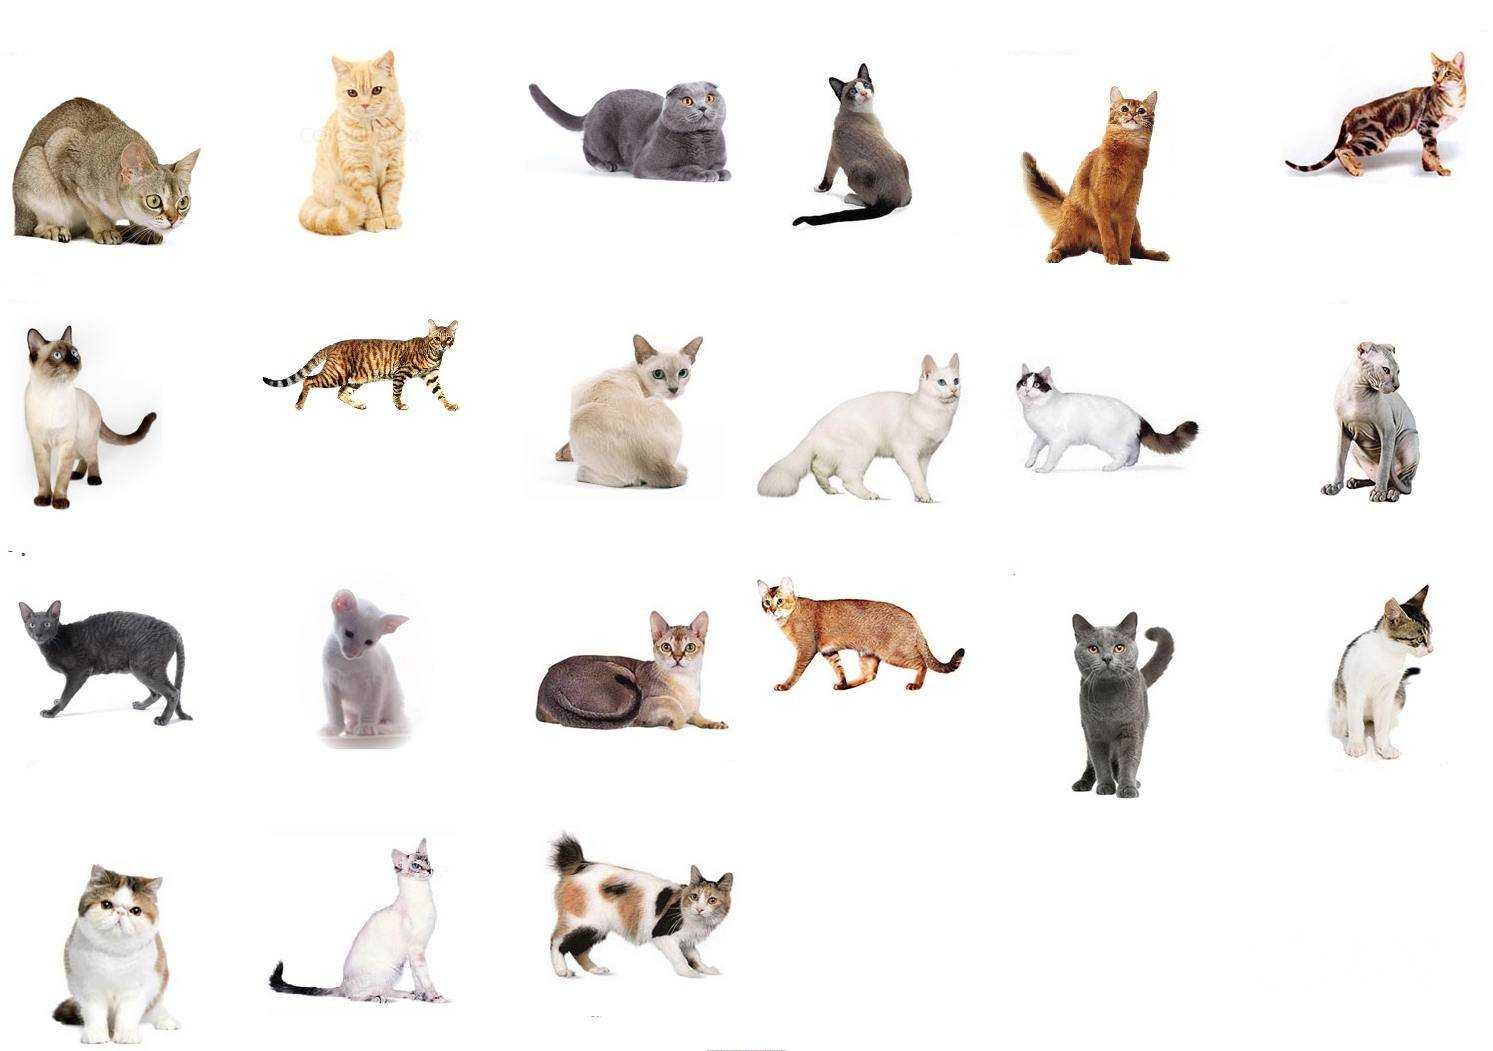 Как определить породу кошки - признаки и особенности